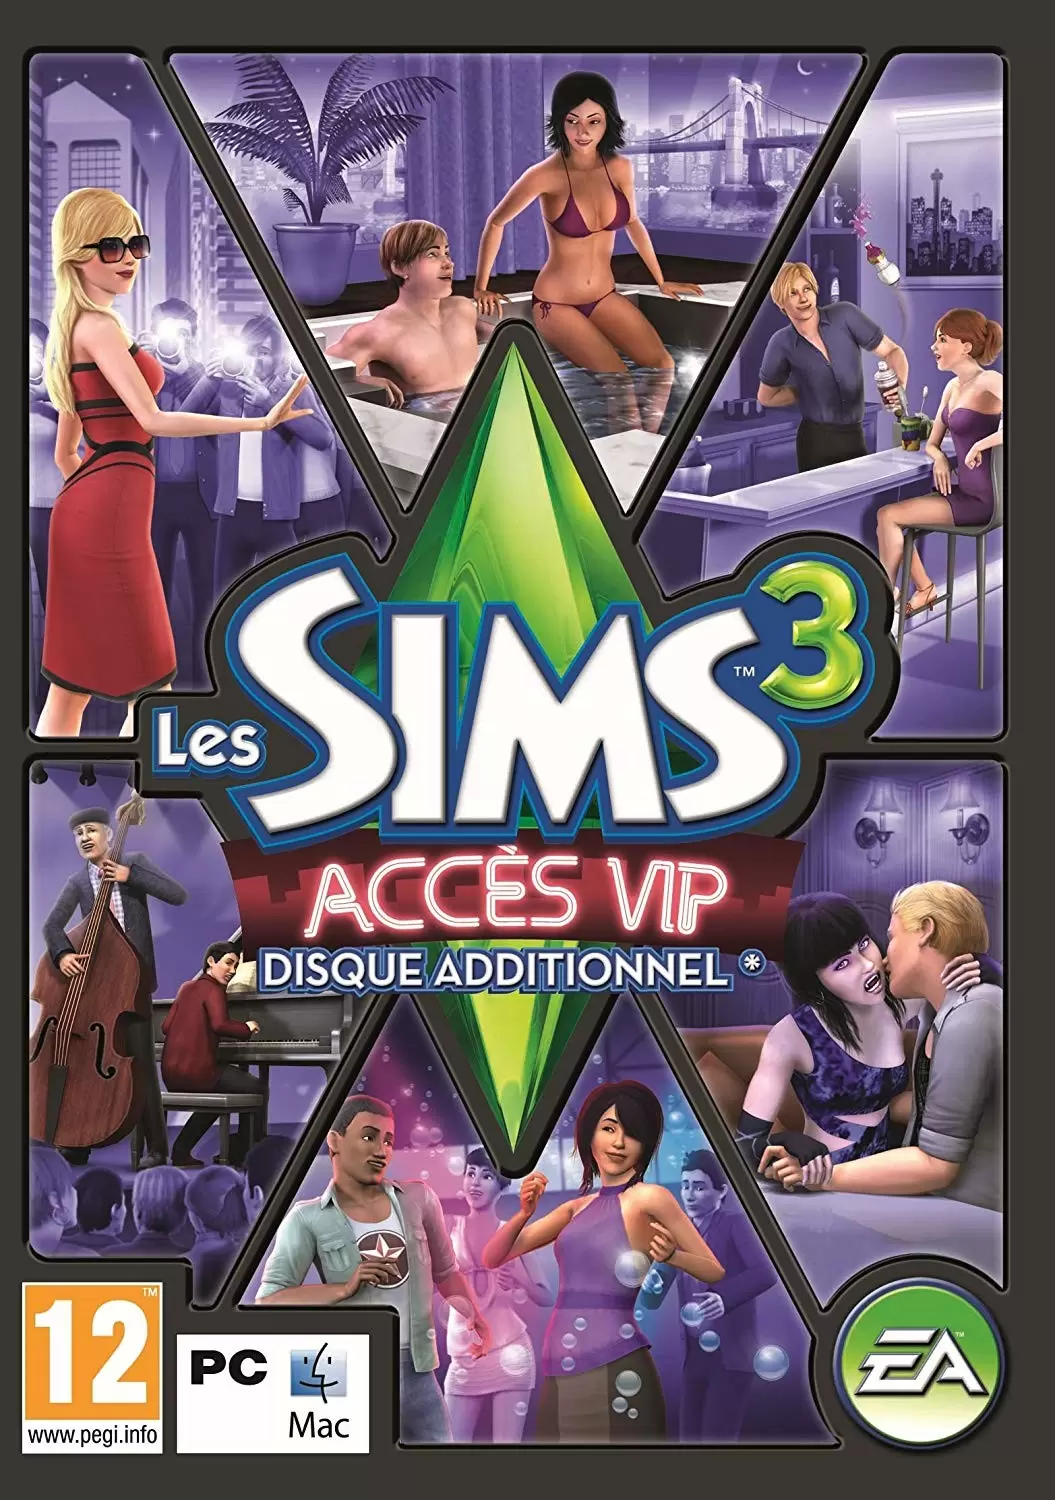 PC Games - Les Sims 3 : Accès VIP